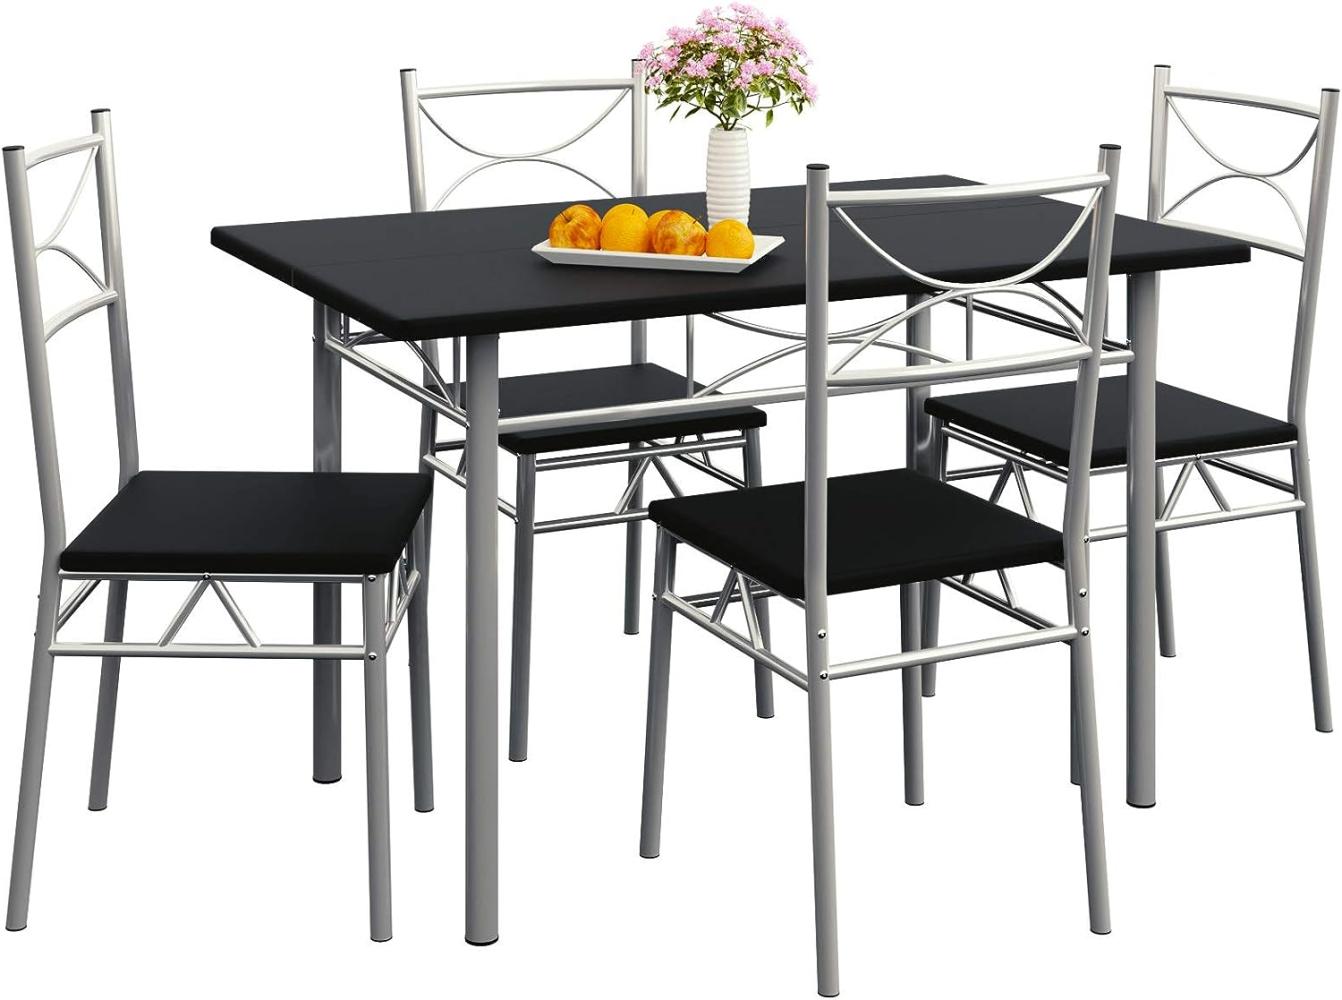 Casaria 5 TLG Sitzgruppe Paul Esstisch mit 4 Stühlen Schwarz für Esszimmer Küche Essgruppe Küchentisch Tisch Stuhl Set Bild 1